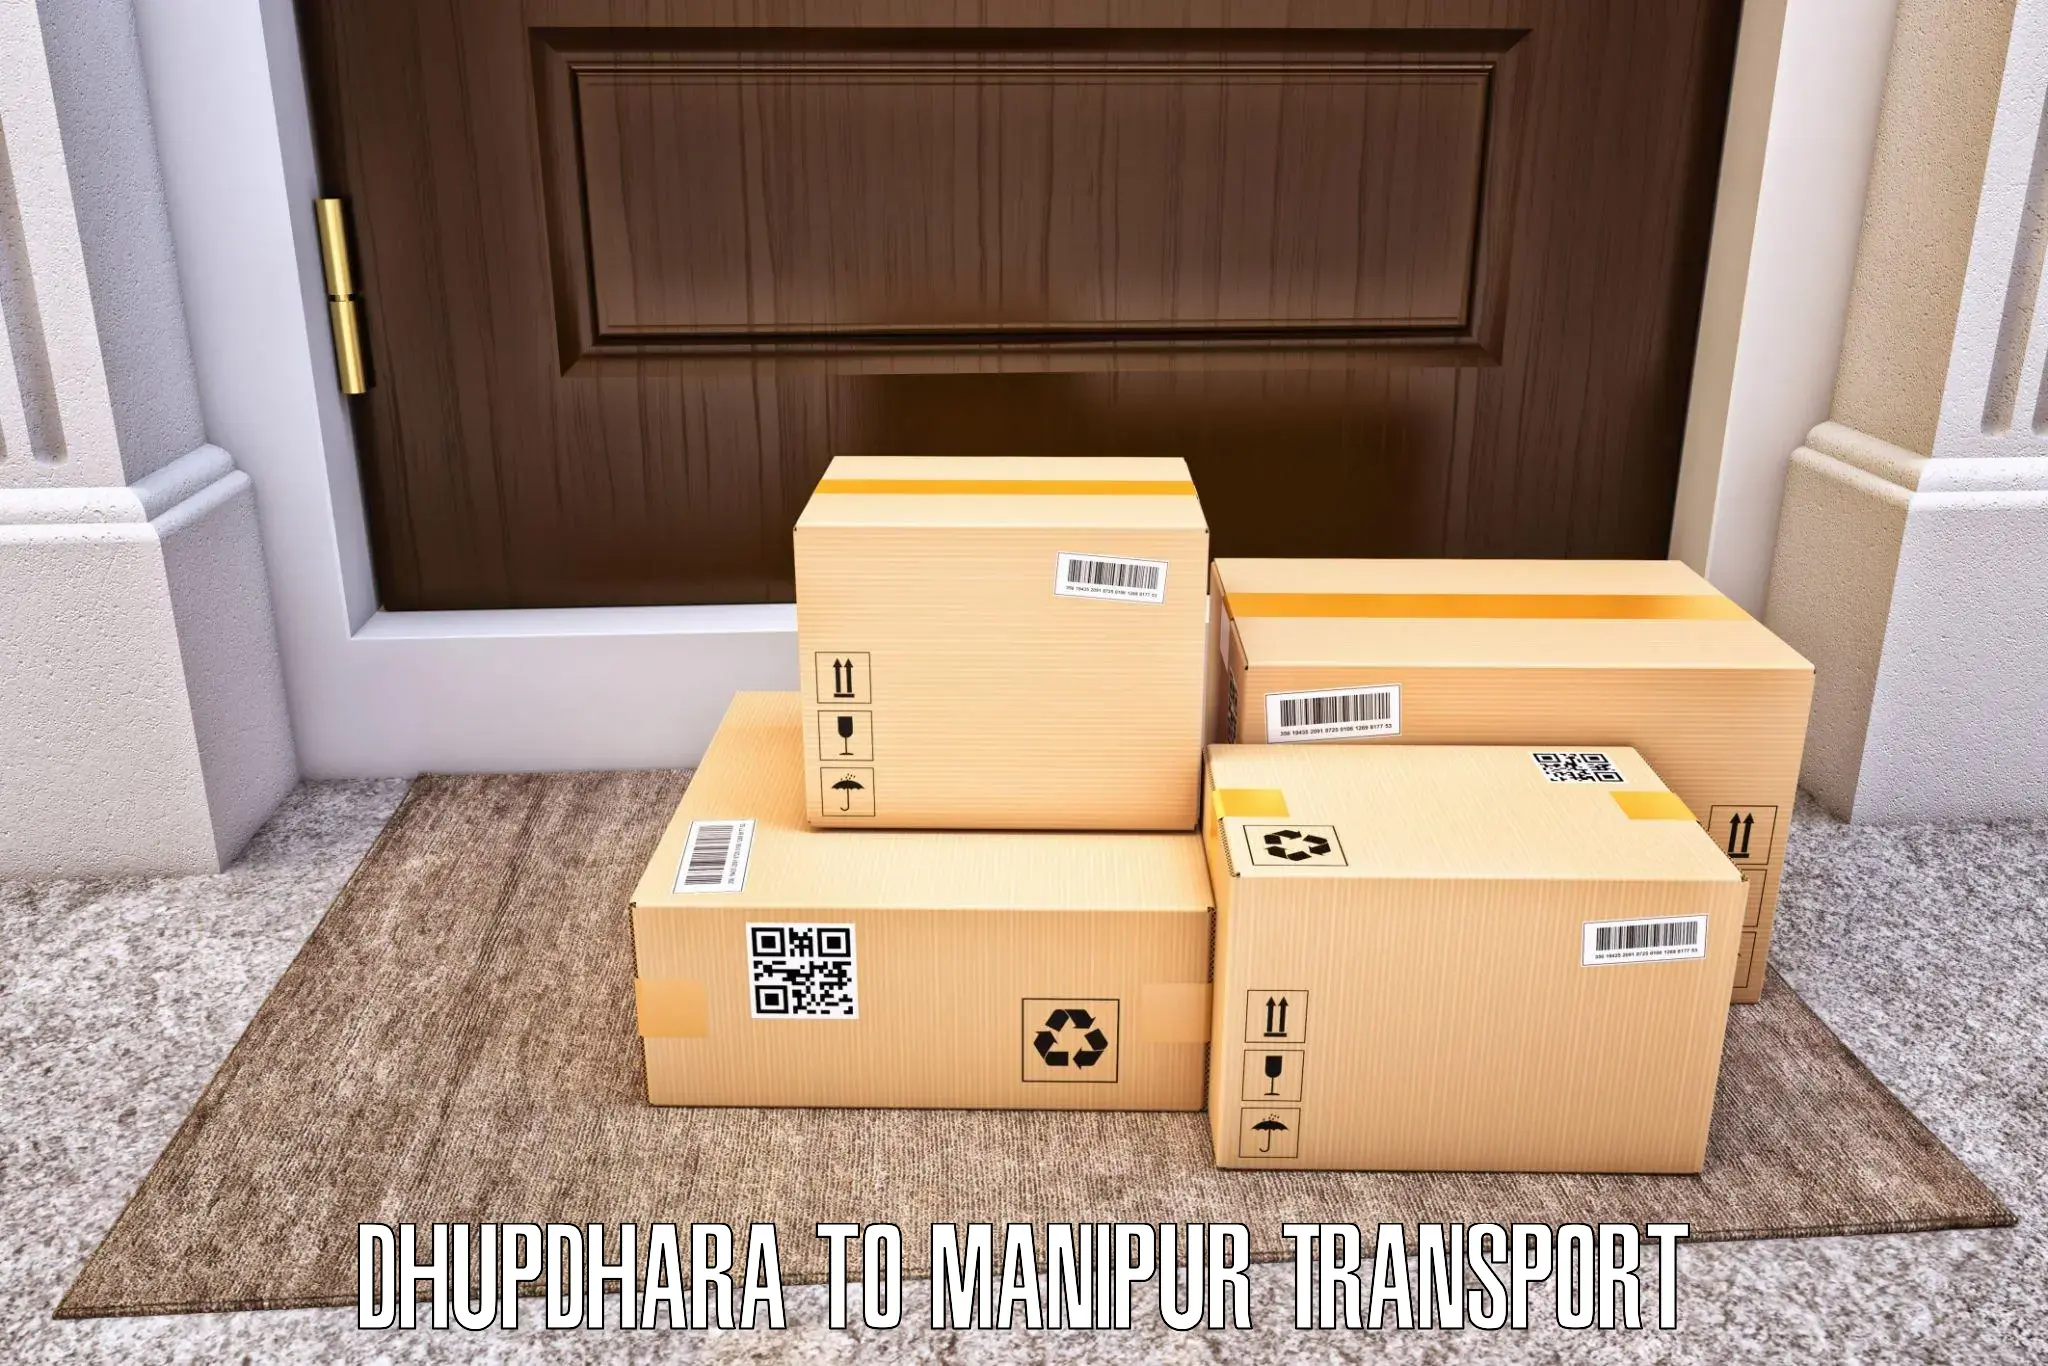 Transportation services Dhupdhara to NIT Manipur